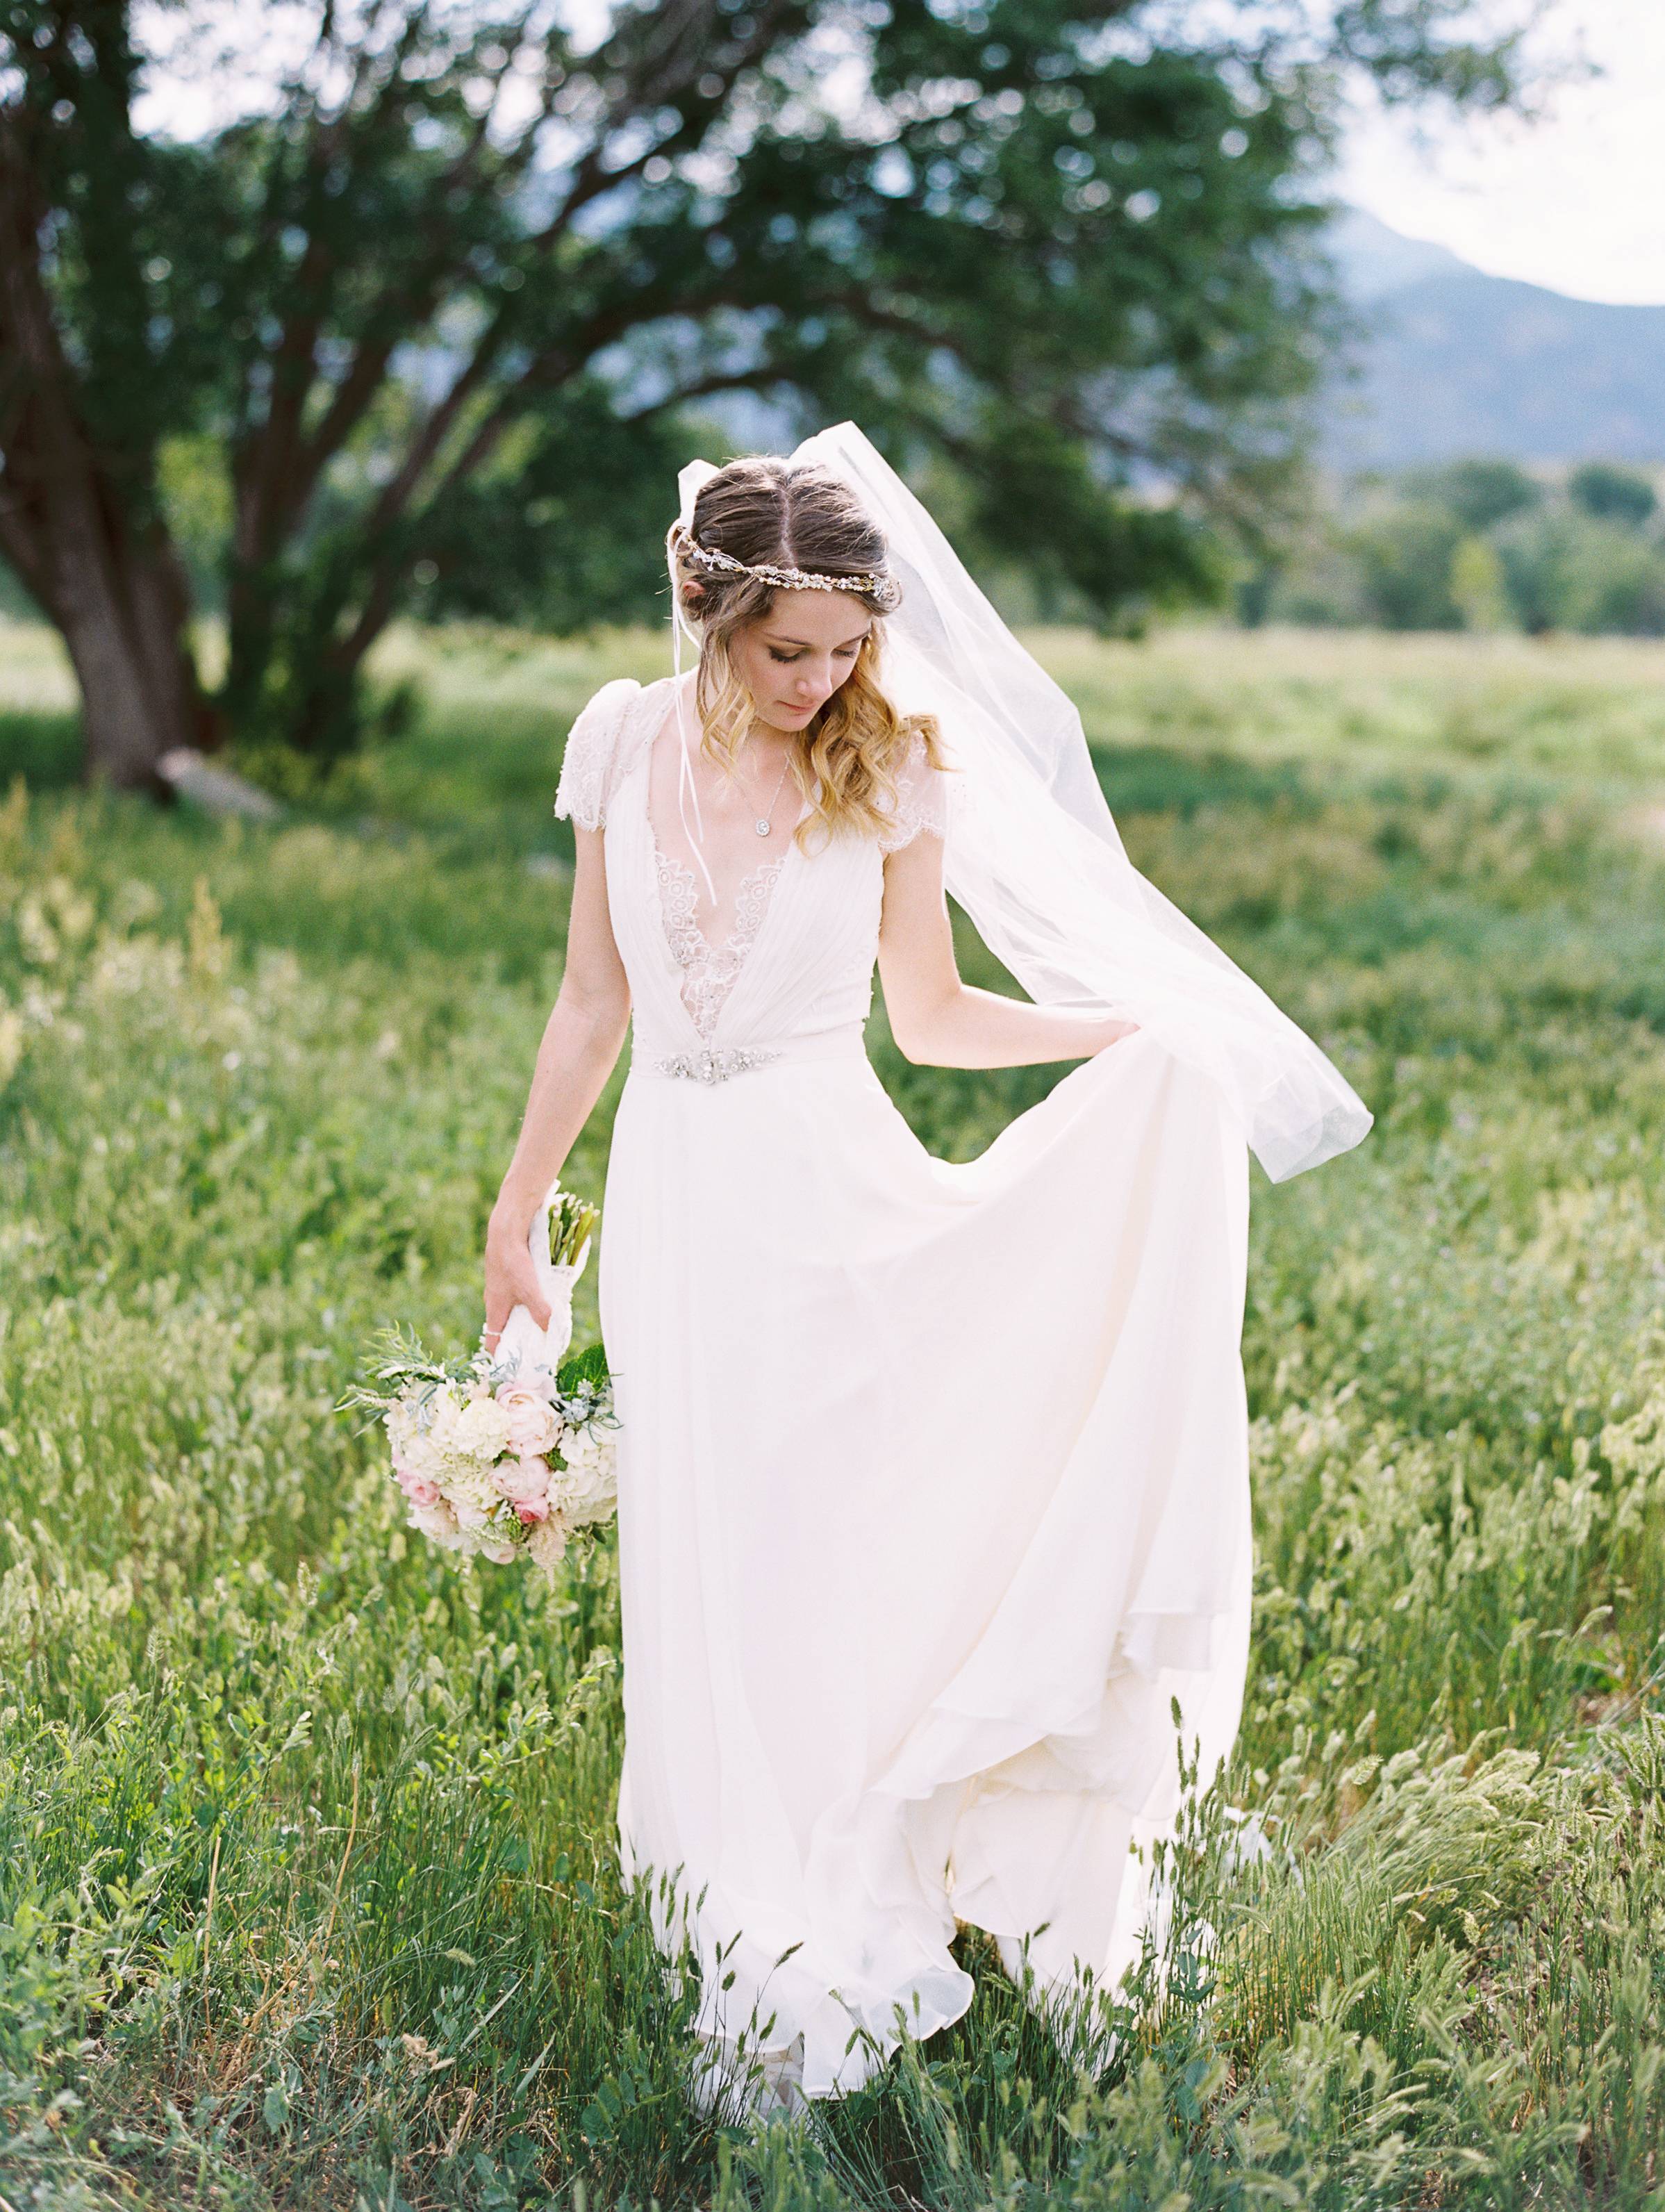 Lwd Bride Annie S Rustic Garden Wedding Little White Dress